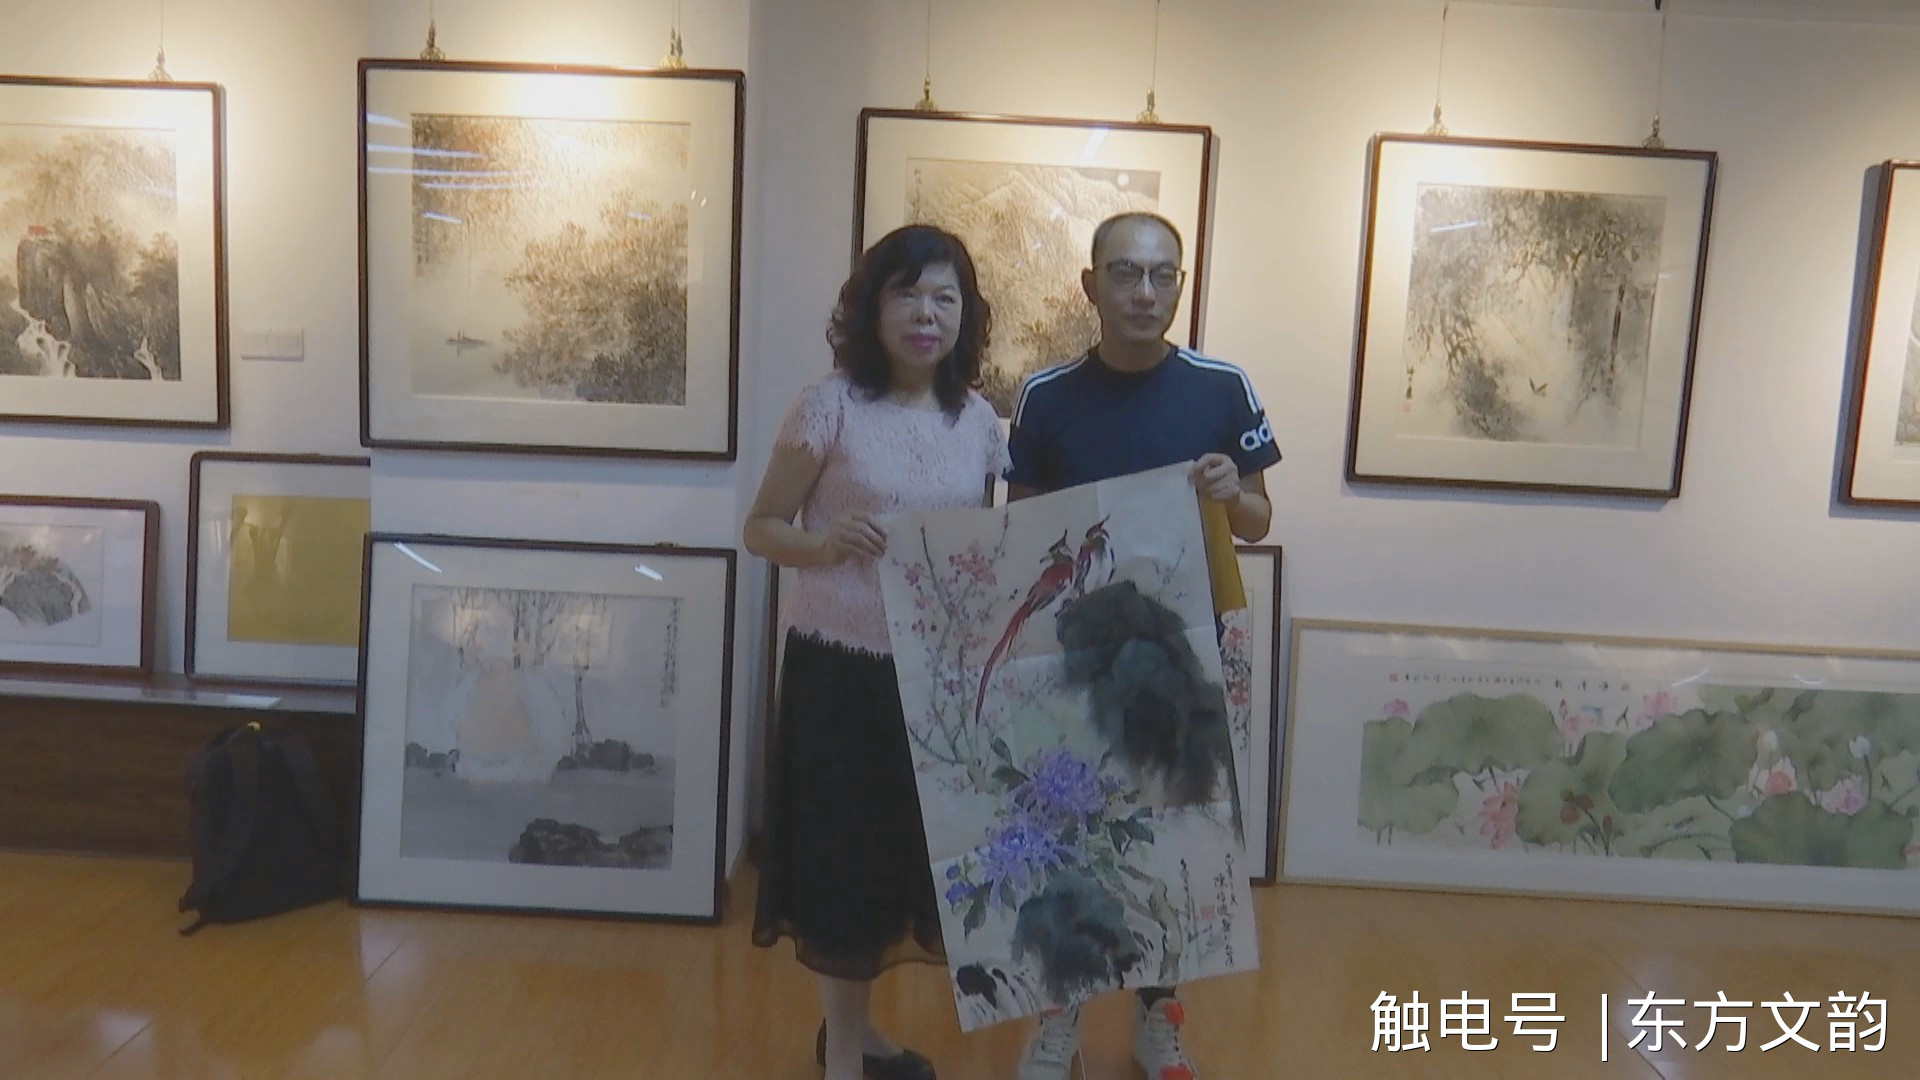 台湾艺术家赠作品给铜陵新媒体人员 